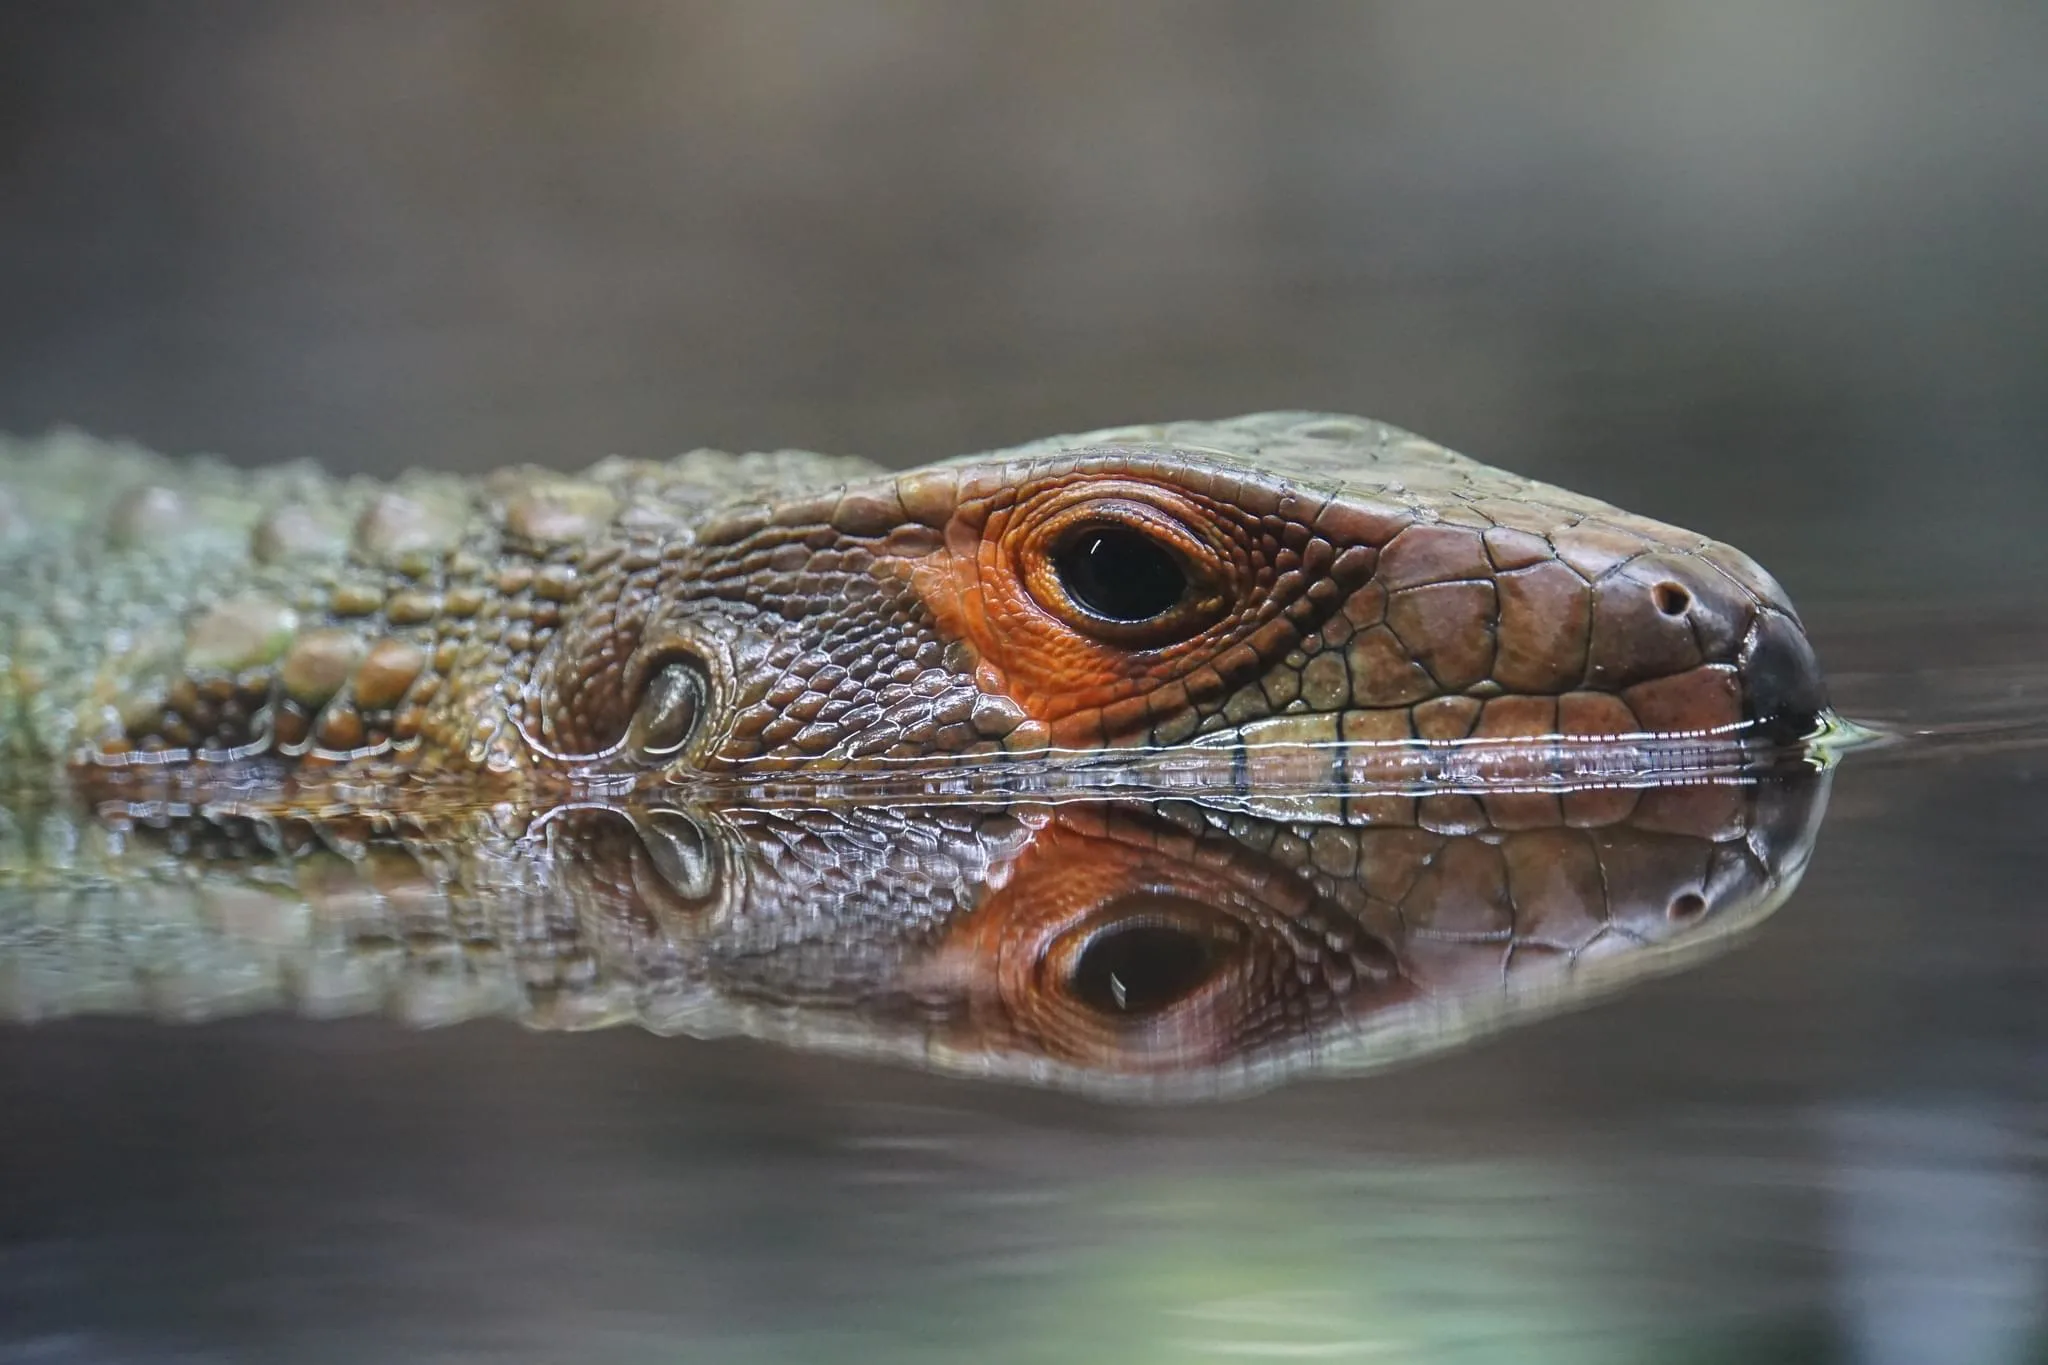 97 photos of Northern Caiman Lizard